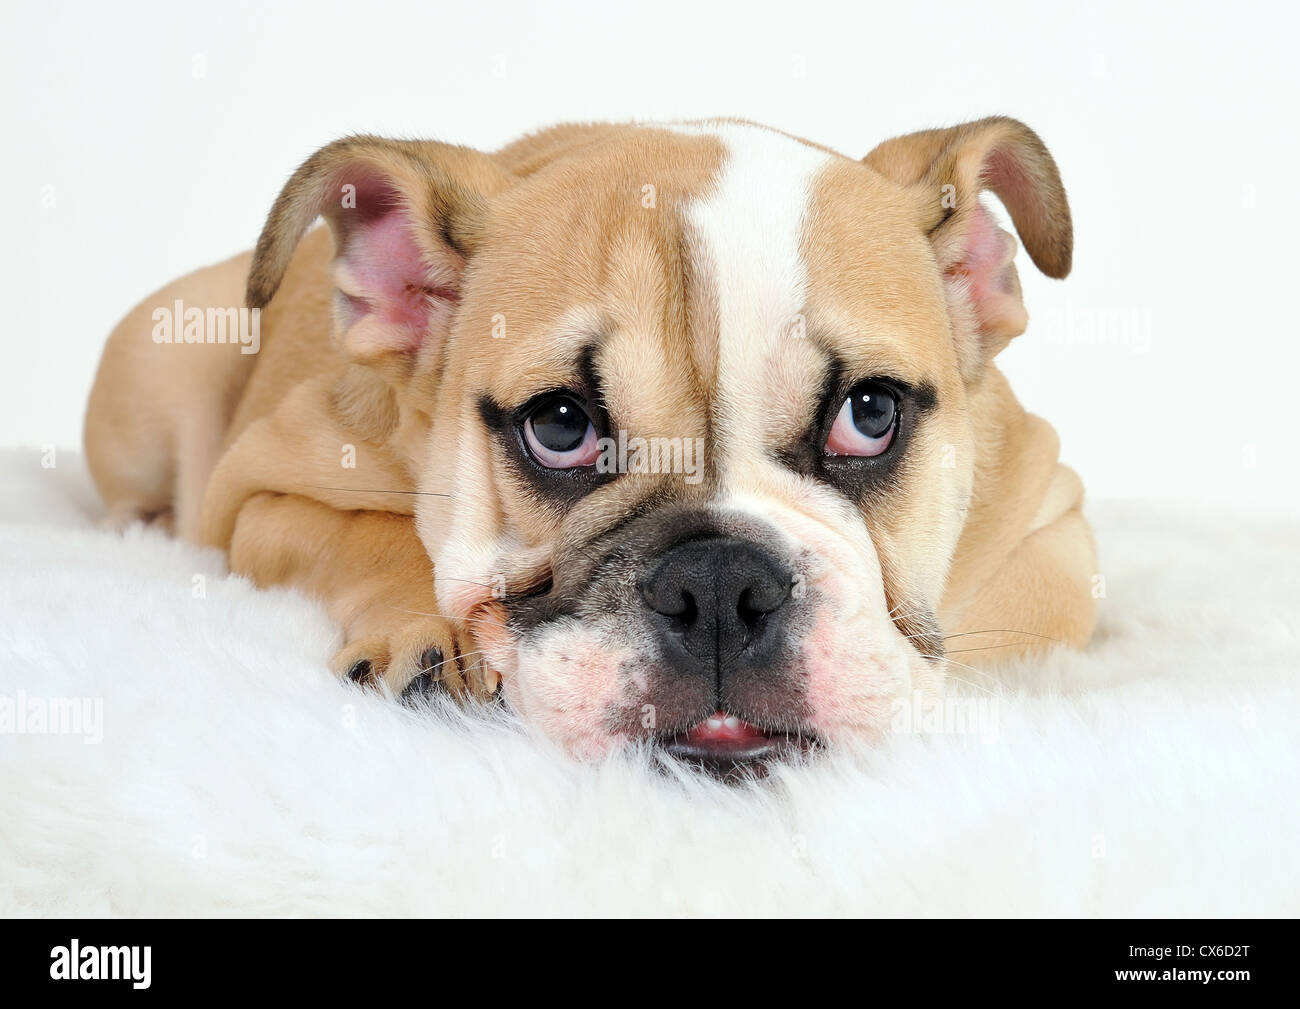 English Bulldog Pup on white background Stock Photo